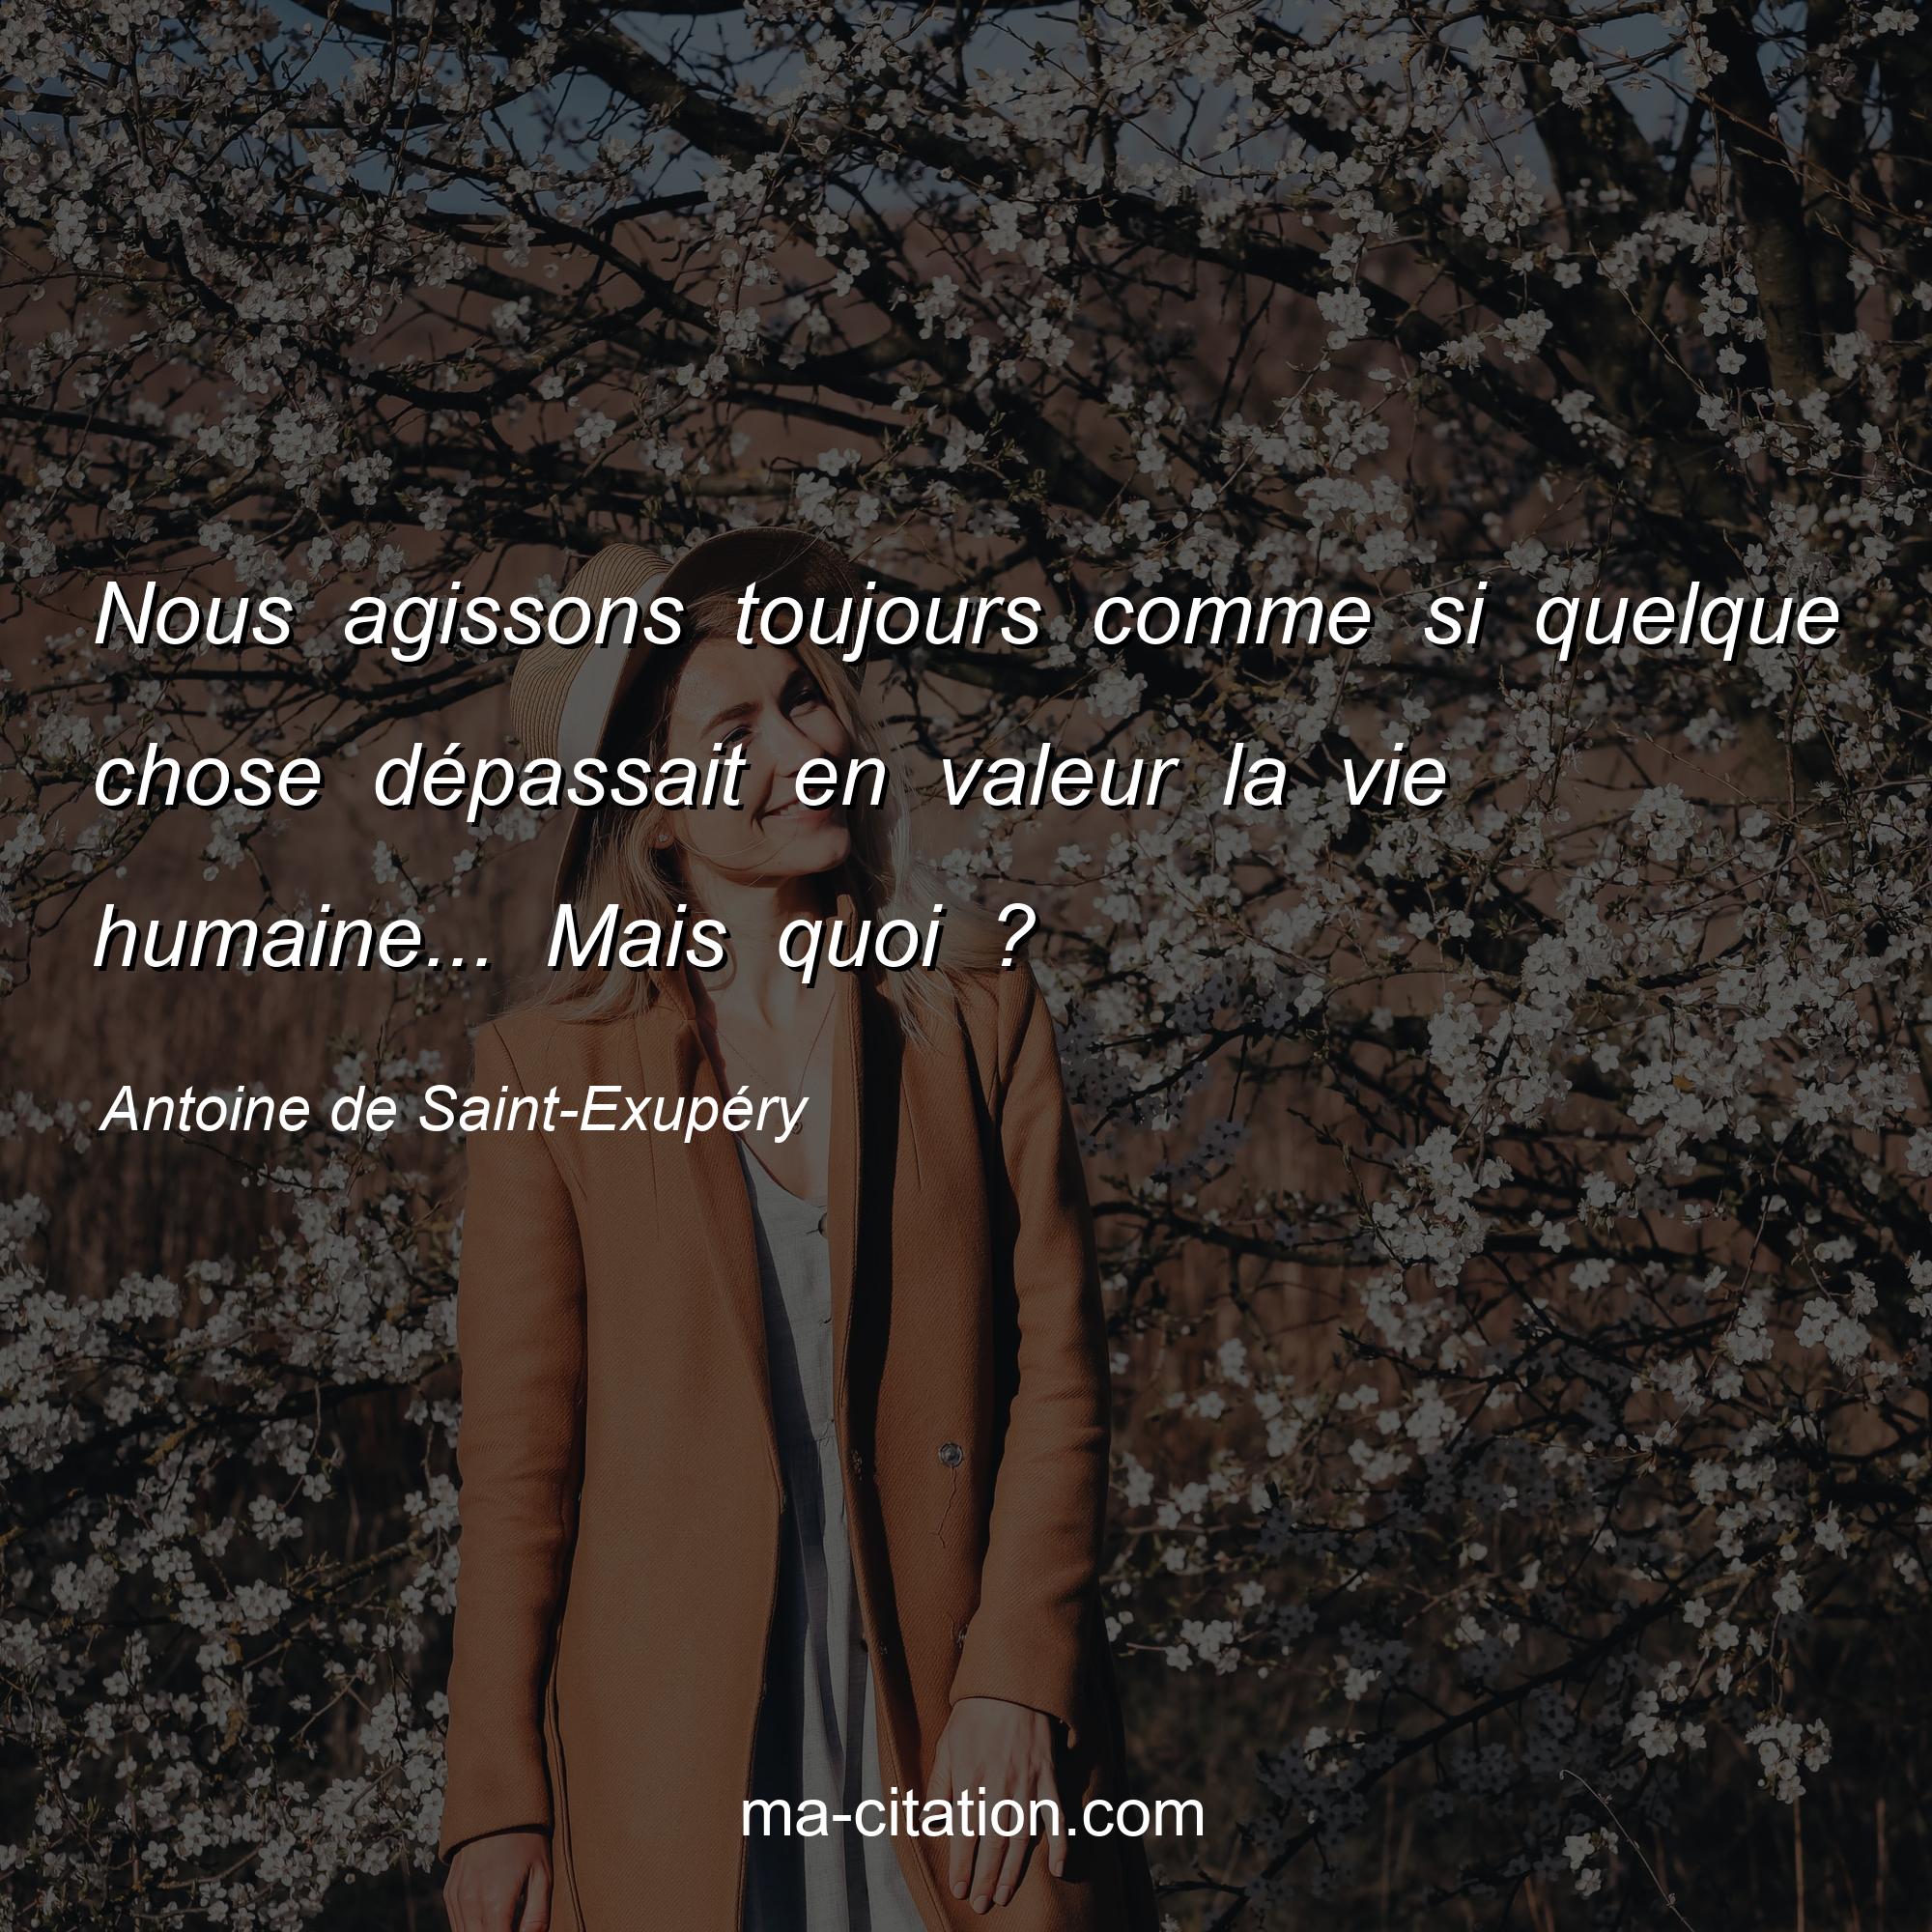 Antoine de Saint-Exupéry : Nous agissons toujours comme si quelque chose dépassait en valeur la vie humaine... Mais quoi ?